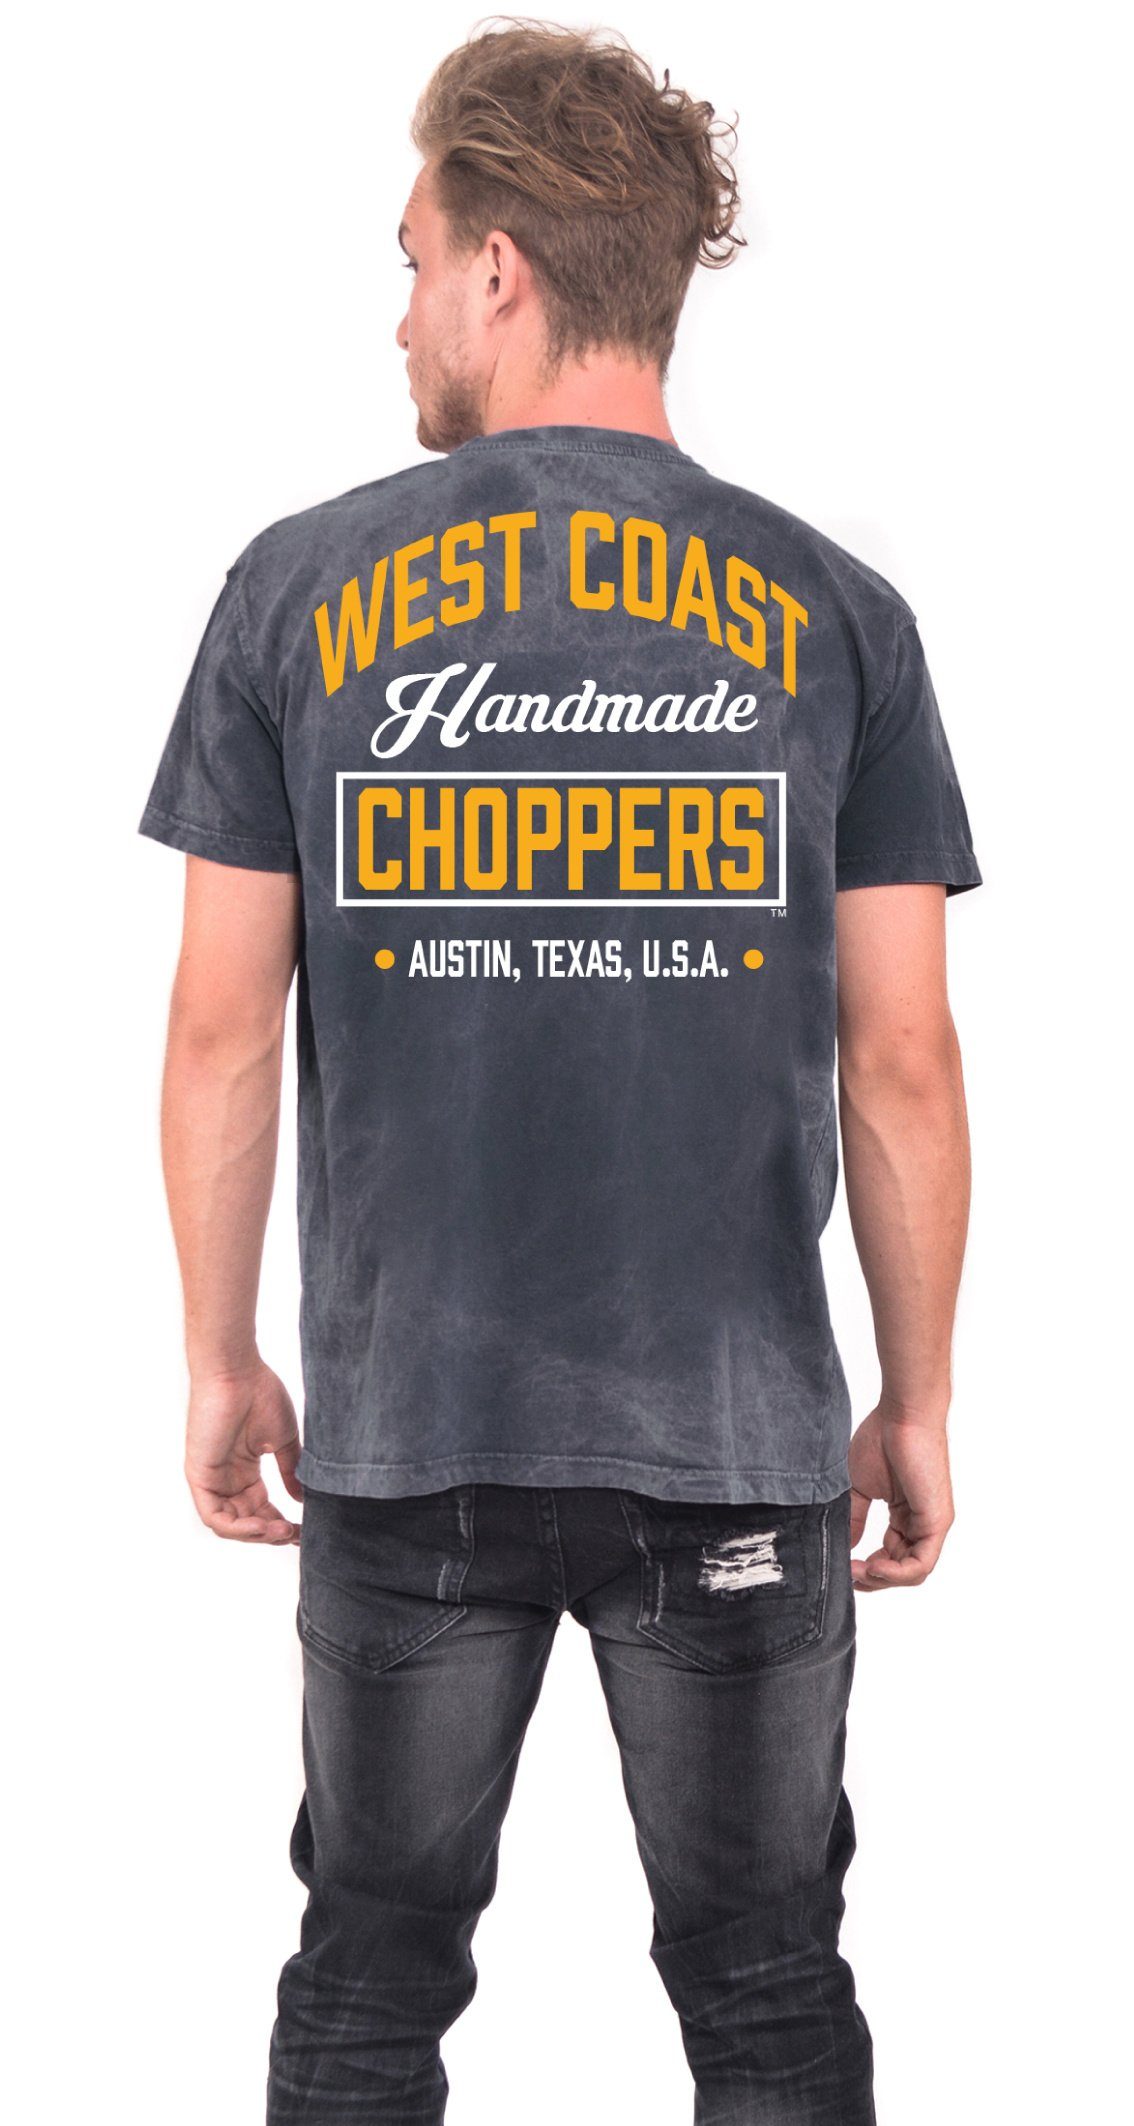 Choppers T-Shirt Choppers Coast Handmade Coast West Herren West T-Shirt Adult